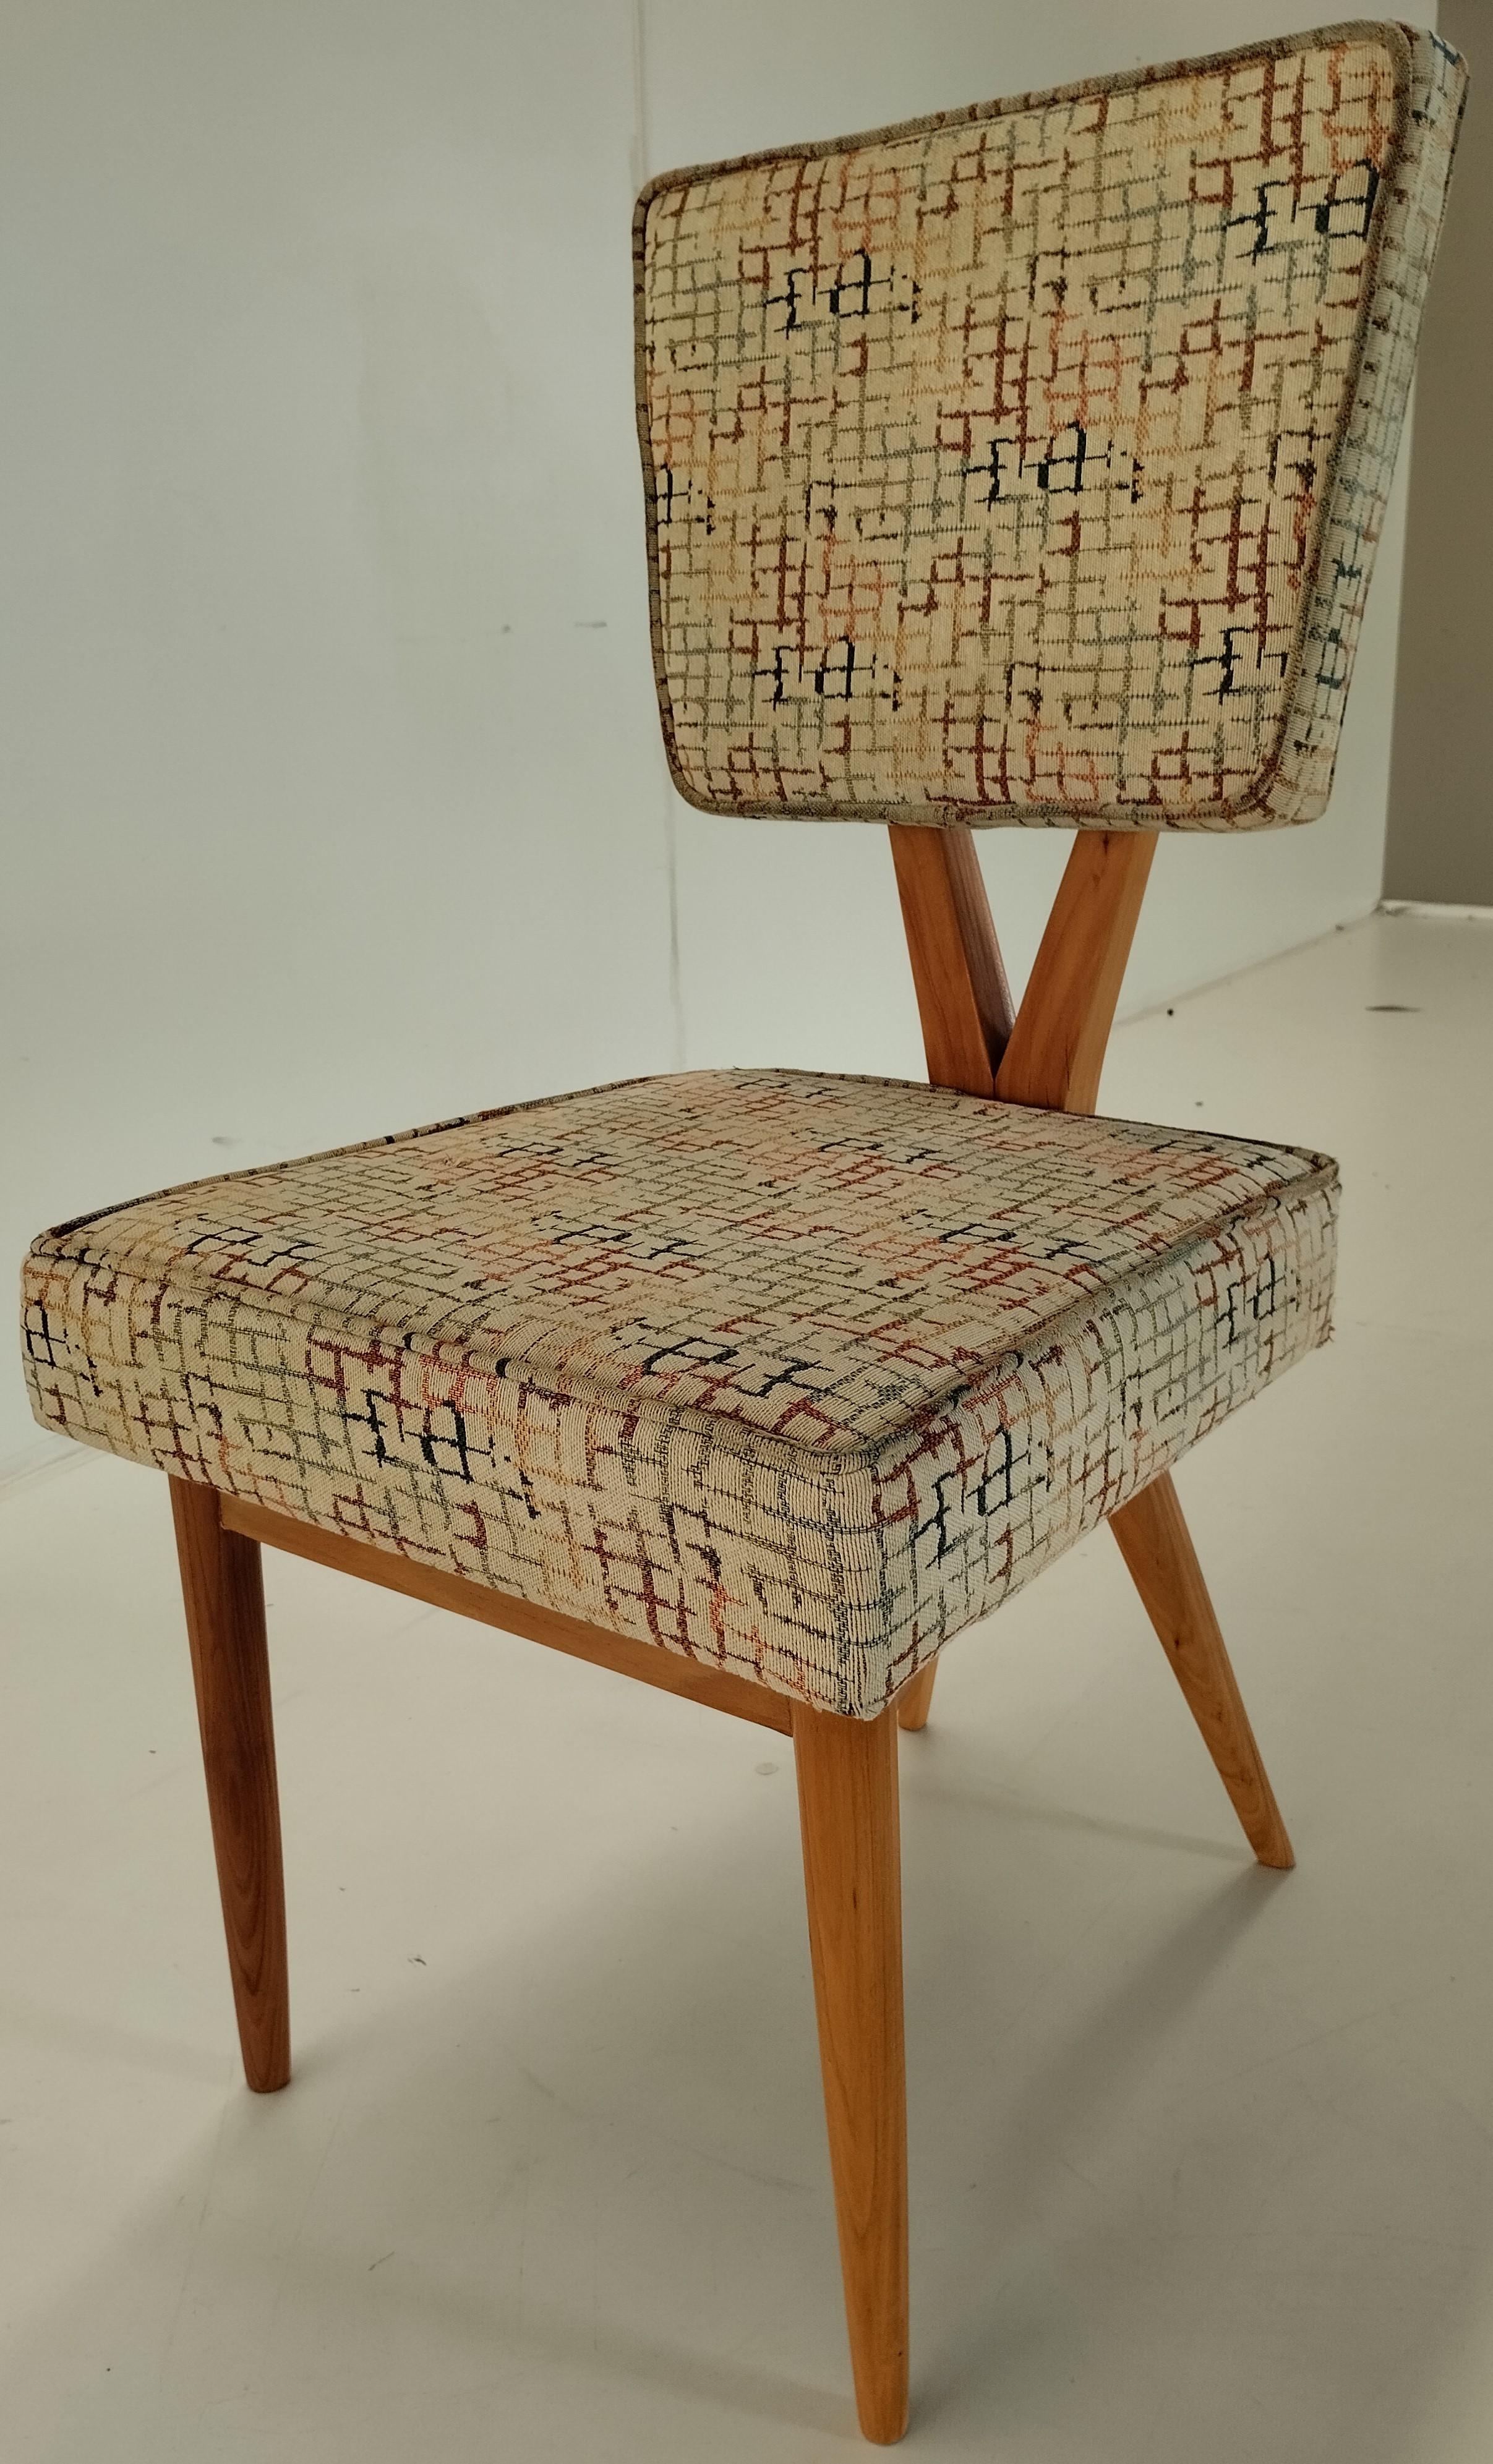 Cette belle et très rare chaise est attribuée à José Zanine Caldas et à son entreprise Móveis Artisticos Z. Structure en bois noble massif, totalement originale, seulement nettoyée et remise à neuf. Dossier en X. Dossier et assise en tissu tacheado